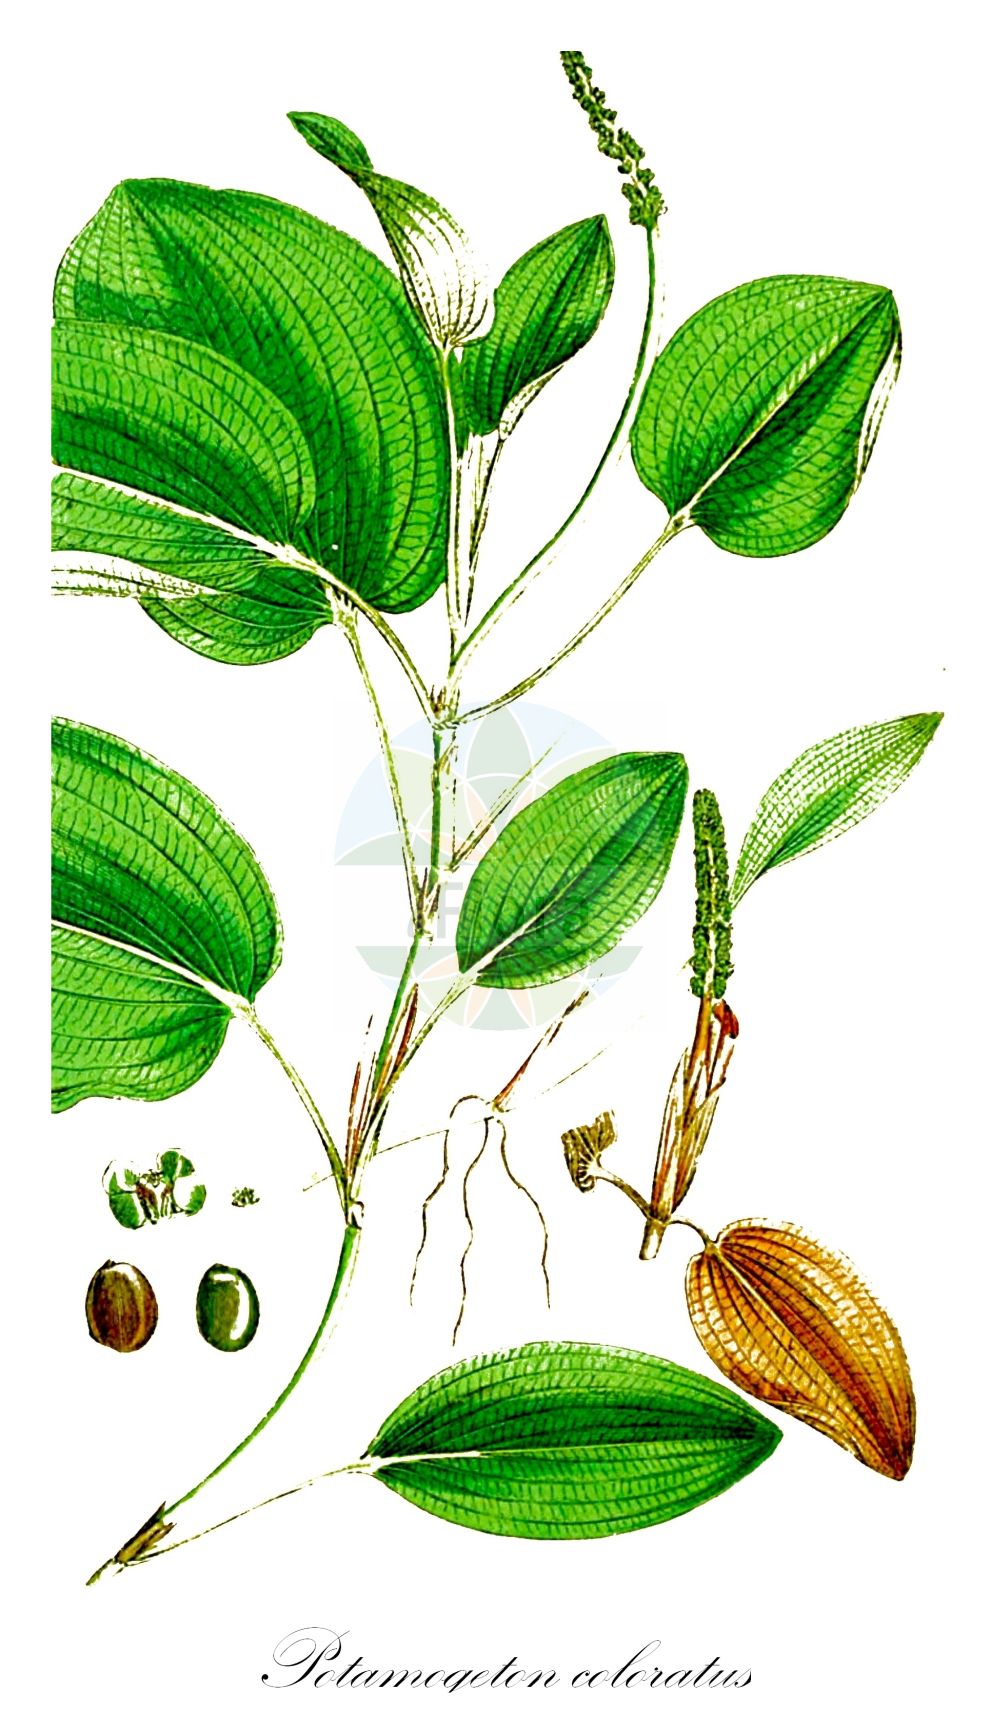 Historische Abbildung von Potamogeton coloratus (Gefärbtes Laichkraut - Fen Pondweed). Das Bild zeigt Blatt, Bluete, Frucht und Same. ---- Historical Drawing of Potamogeton coloratus (Gefärbtes Laichkraut - Fen Pondweed). The image is showing leaf, flower, fruit and seed.(Potamogeton coloratus,Gefärbtes Laichkraut,Fen Pondweed,Potamogeton coloratus,Potamogeton plantagineus,Potamogeton subflavus,Gefaerbtes Laichkraut,Fen Pondweed,Potamogeton,Laichkraut,Pondweed,Potamogetonaceae,Laichkrautgewächse,Pondweed family,Blatt,Bluete,Frucht,Same,leaf,flower,fruit,seed,Sowerby (1790-1813))